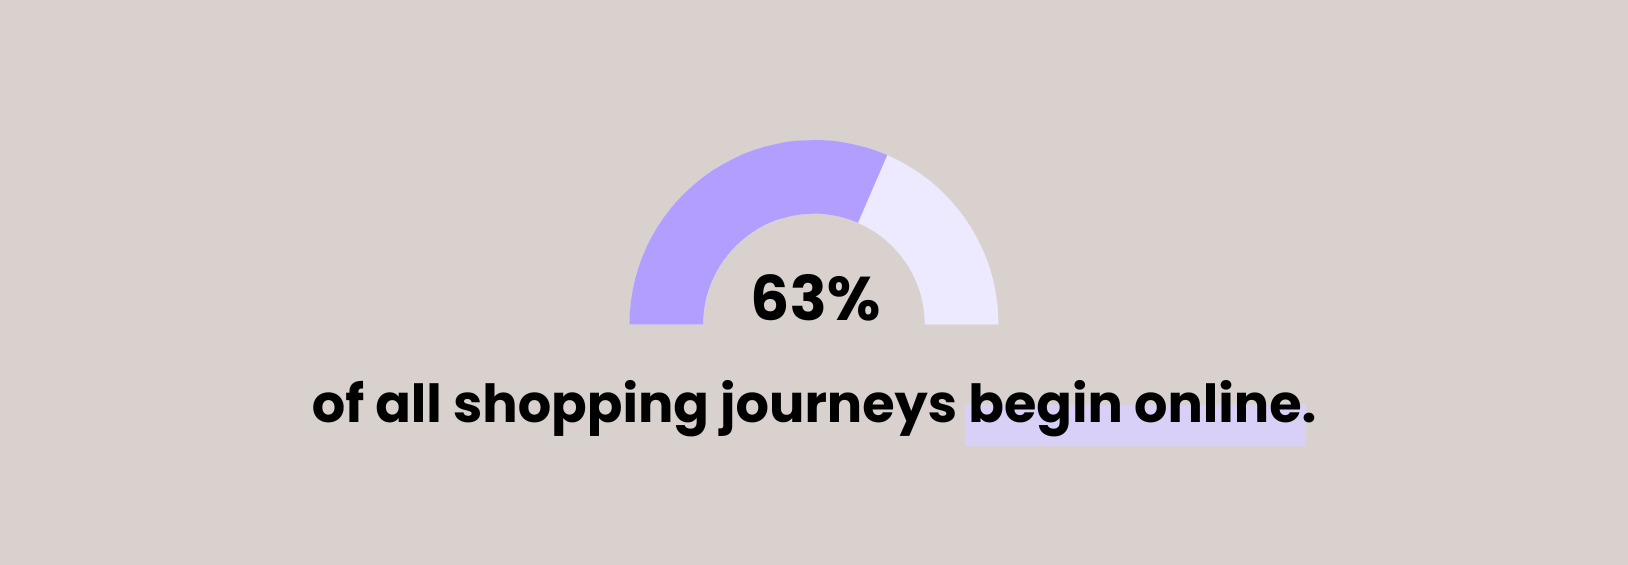 63% of all shopping journeys begin online